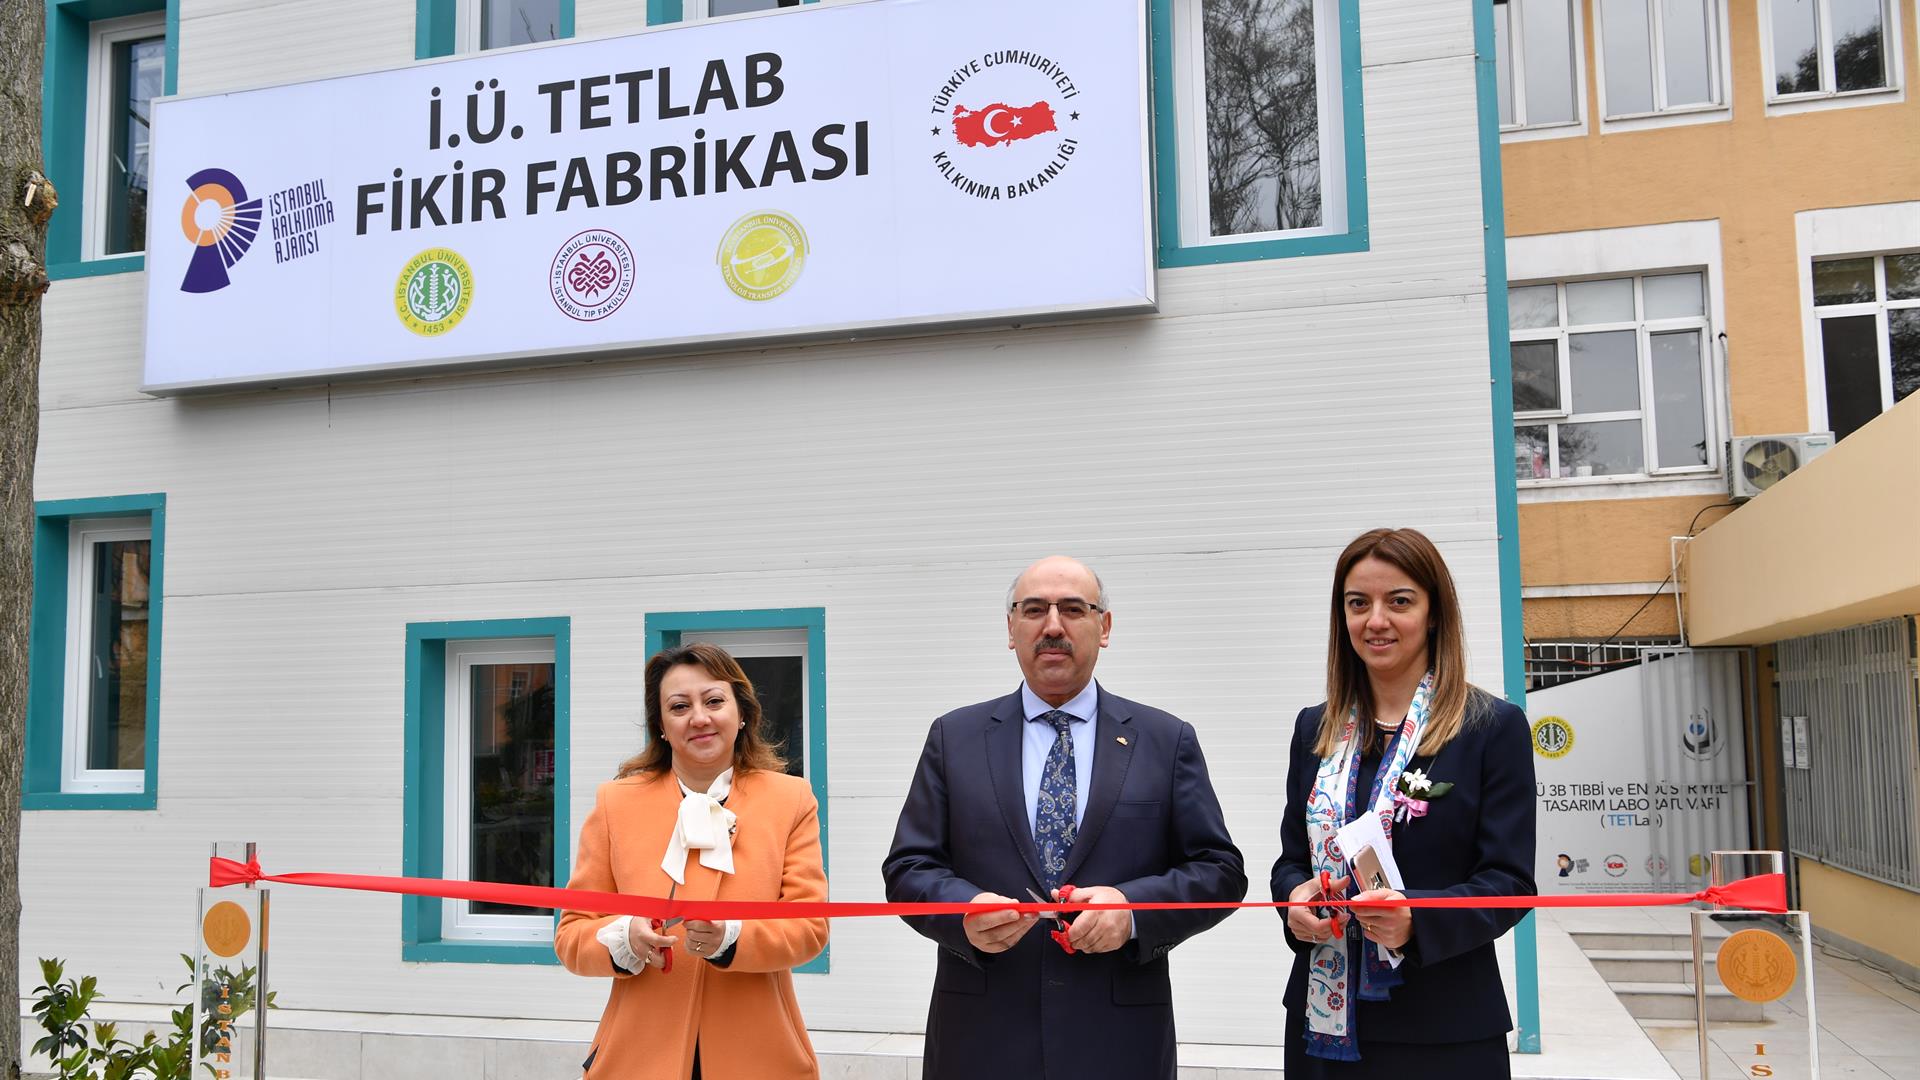 İstanbul-Üniversitesi-TETLAB-Fikir-Fabrikası-Açıldı